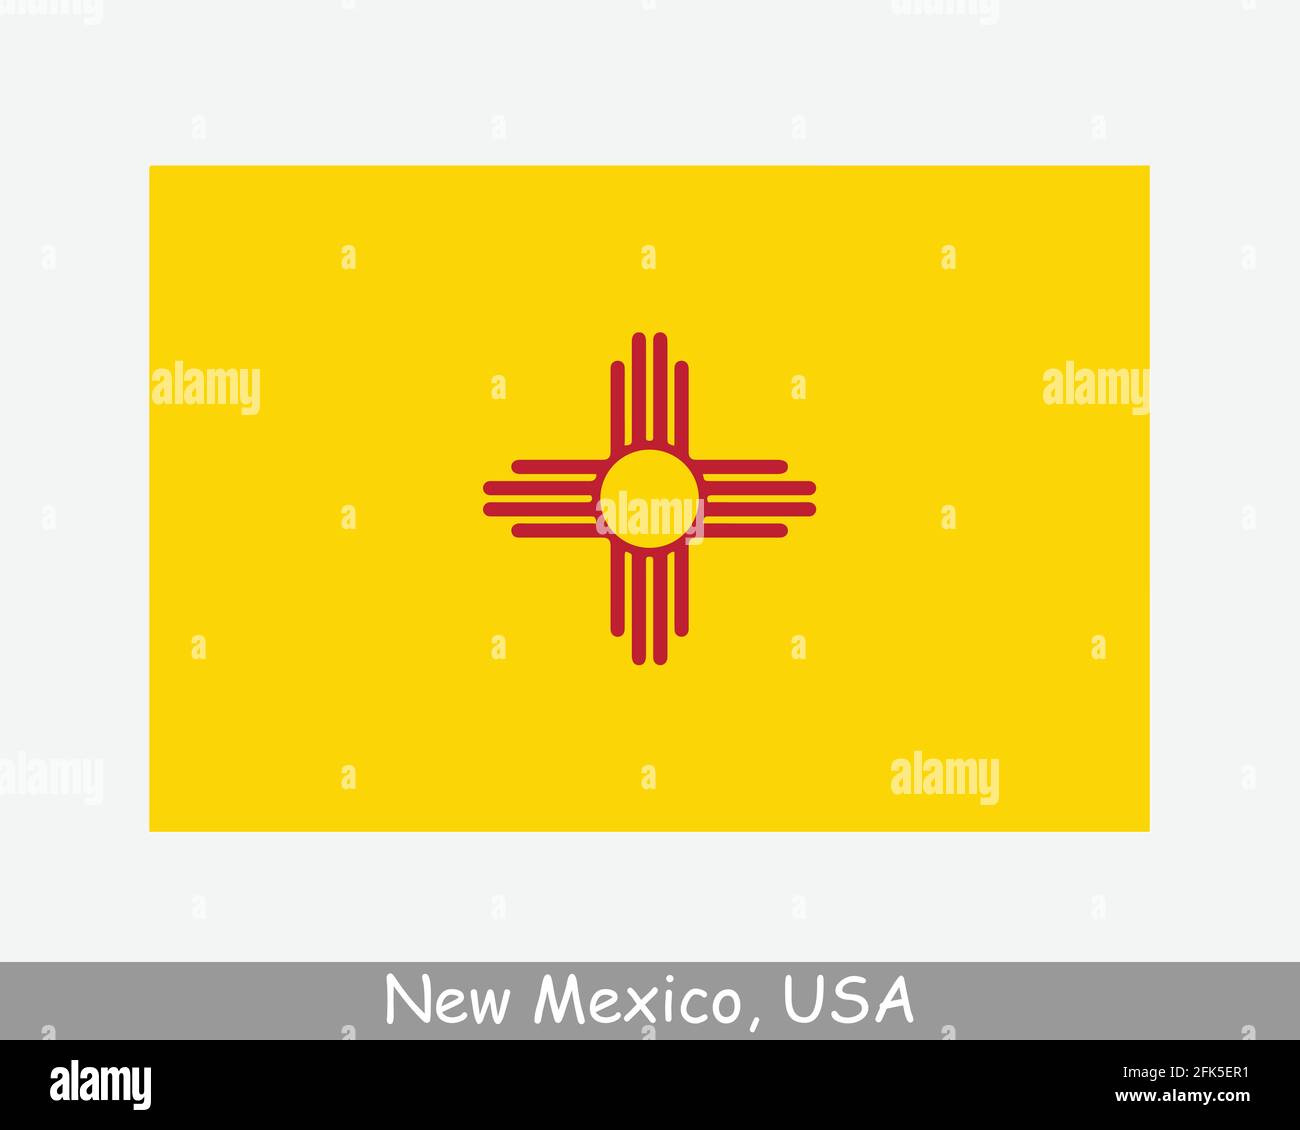 Bandiera dello Stato USA del nuovo Messico. Bandiera di NM, USA isolato su sfondo bianco. Stati Uniti, America, Stati Uniti, Stati Uniti. Vettore Illustrazione Vettoriale